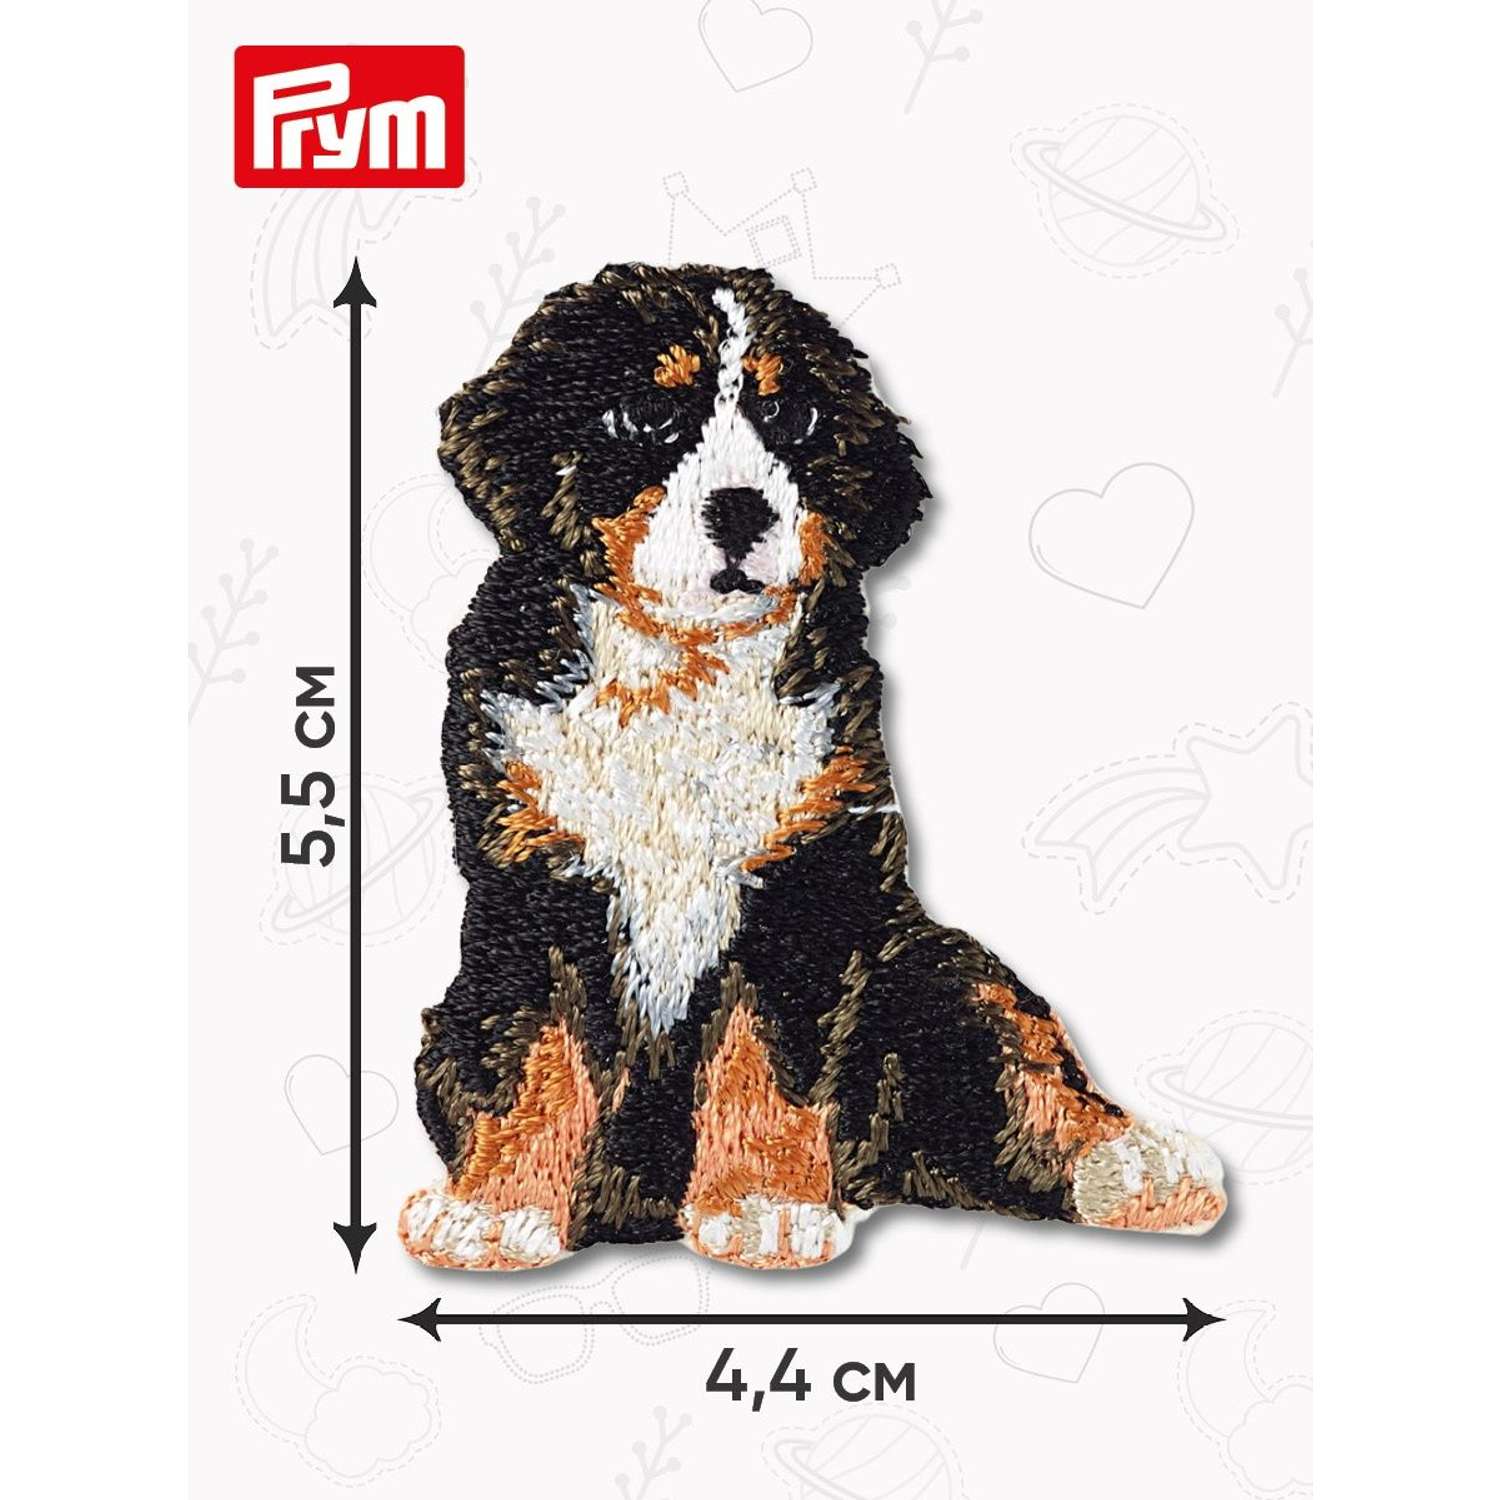 Термоаппликация Prym нашивка Альпийская собака 5.5х4.4 см для ремонта и украшения одежды 925578 - фото 9